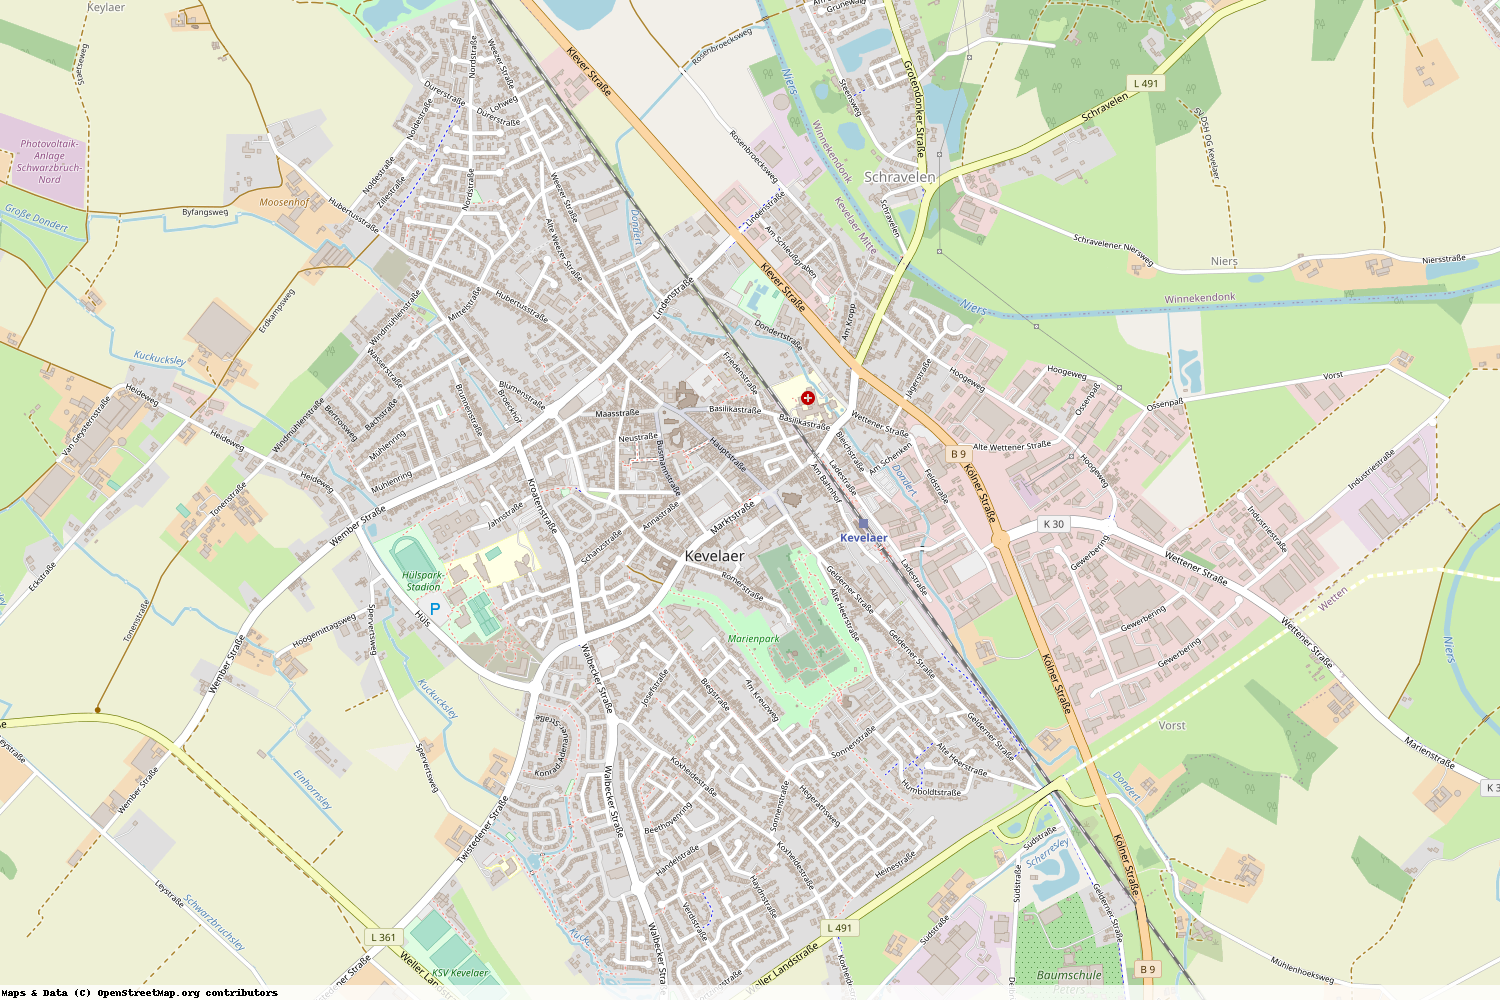 Ist gerade Stromausfall in Nordrhein-Westfalen - Kleve - Kevelaer?